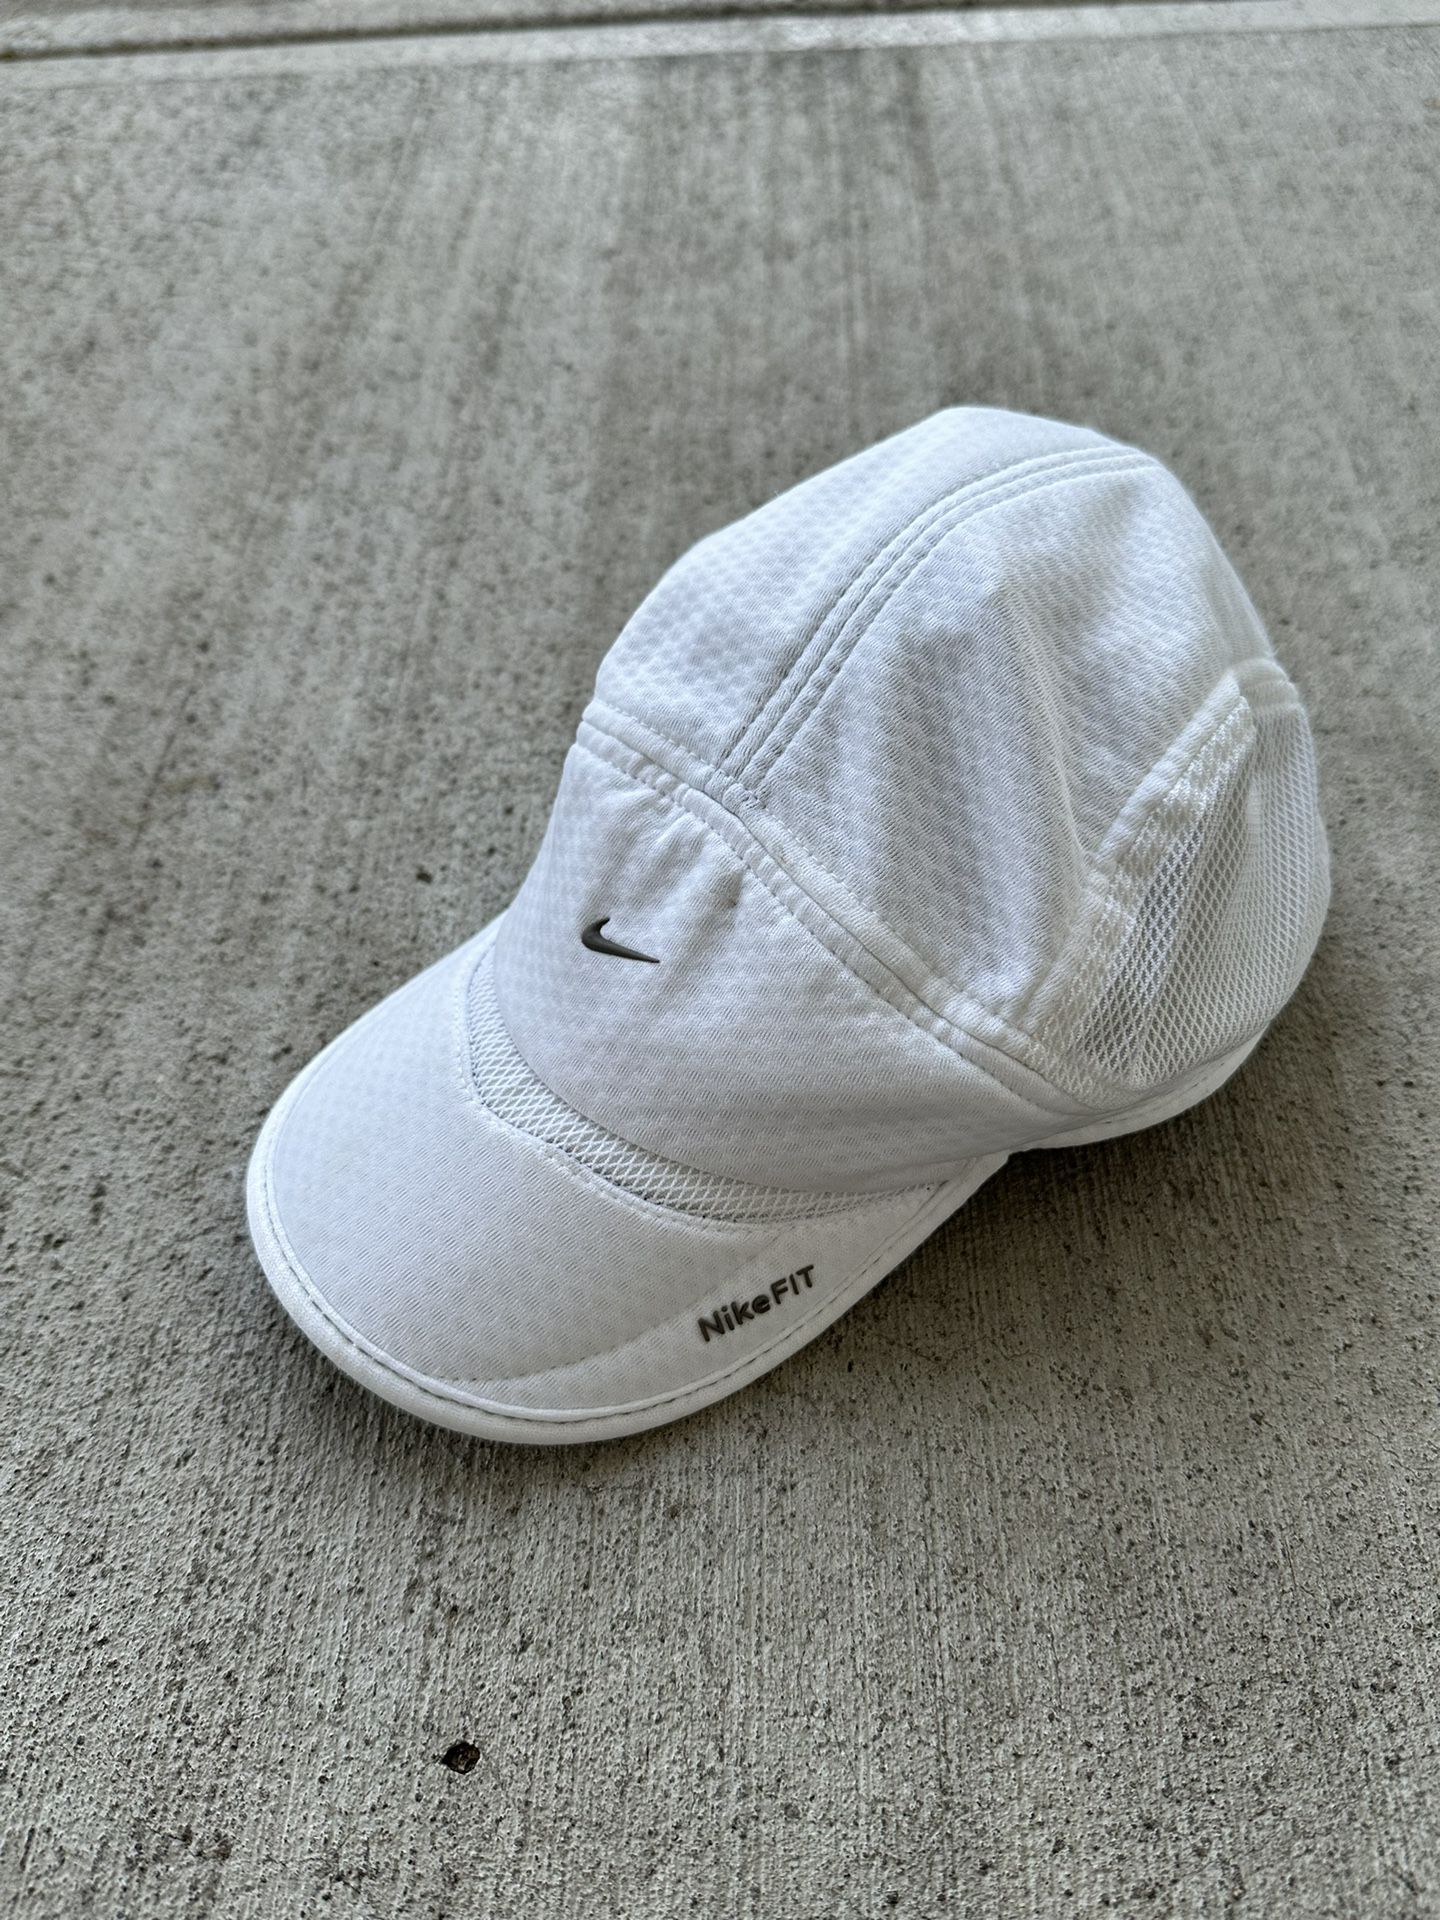 Nike The Runners Company Cap Mesh Daybreak Running Hat 